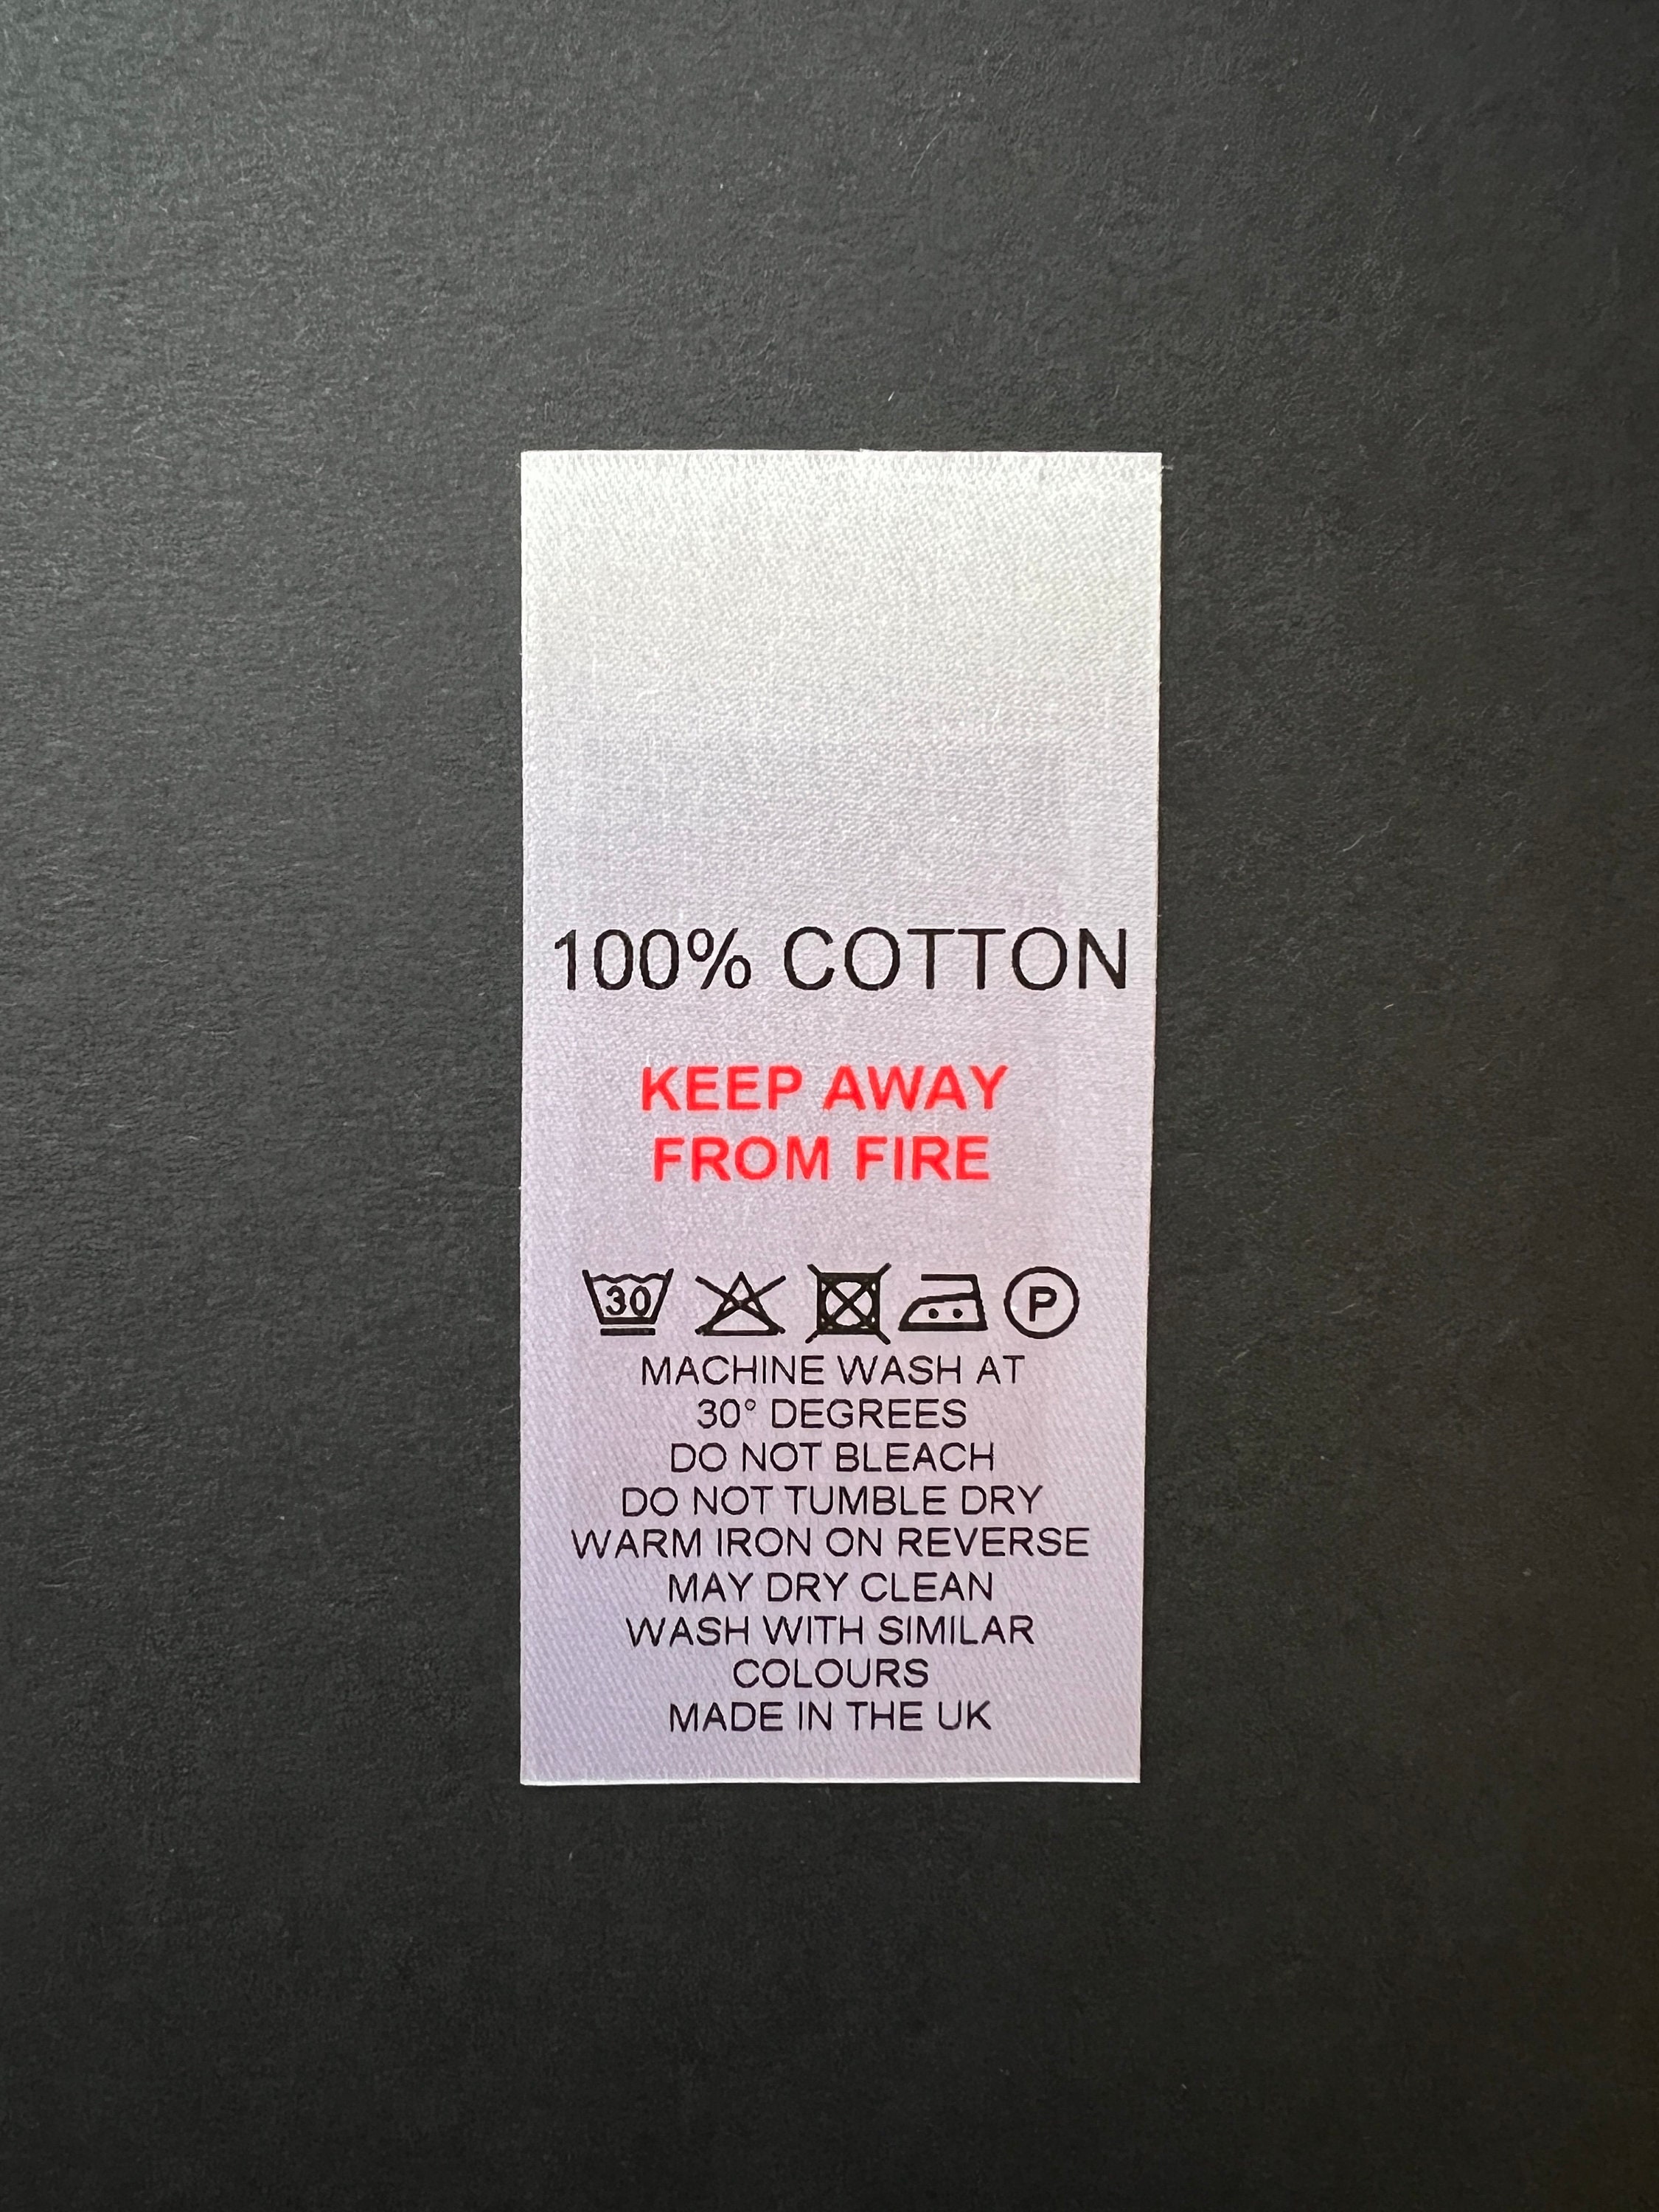 Wash Care Label WHITE Satin Washing Instructions Pre Cut - Etsy UK